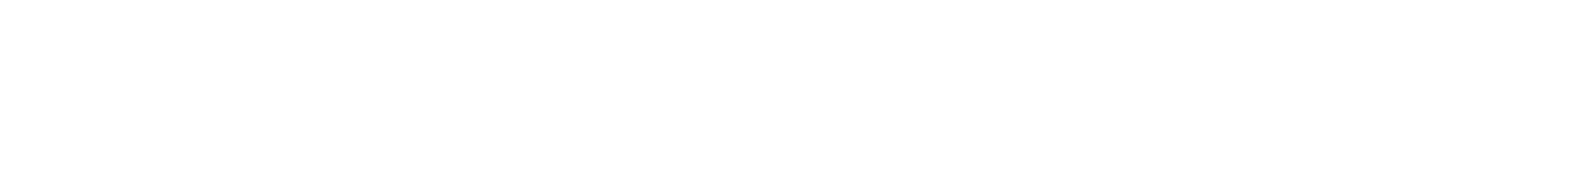 Omnicom logo large for dark backgrounds (transparent PNG)